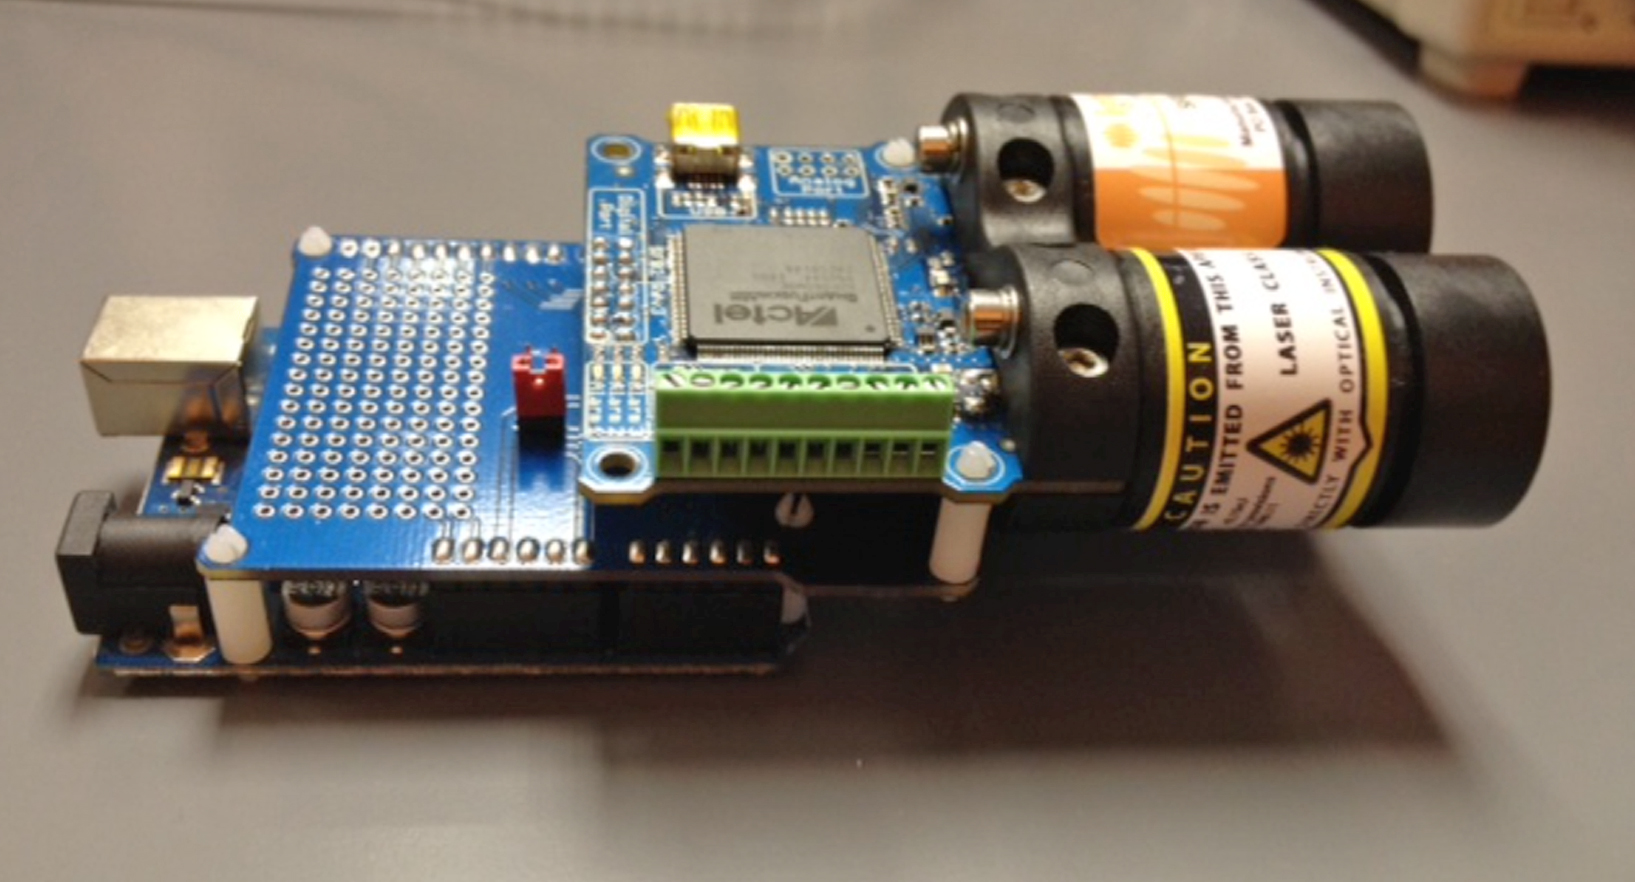 Injektion Nachhall Kopf Laser Range Finder Module Arduino Kopieren